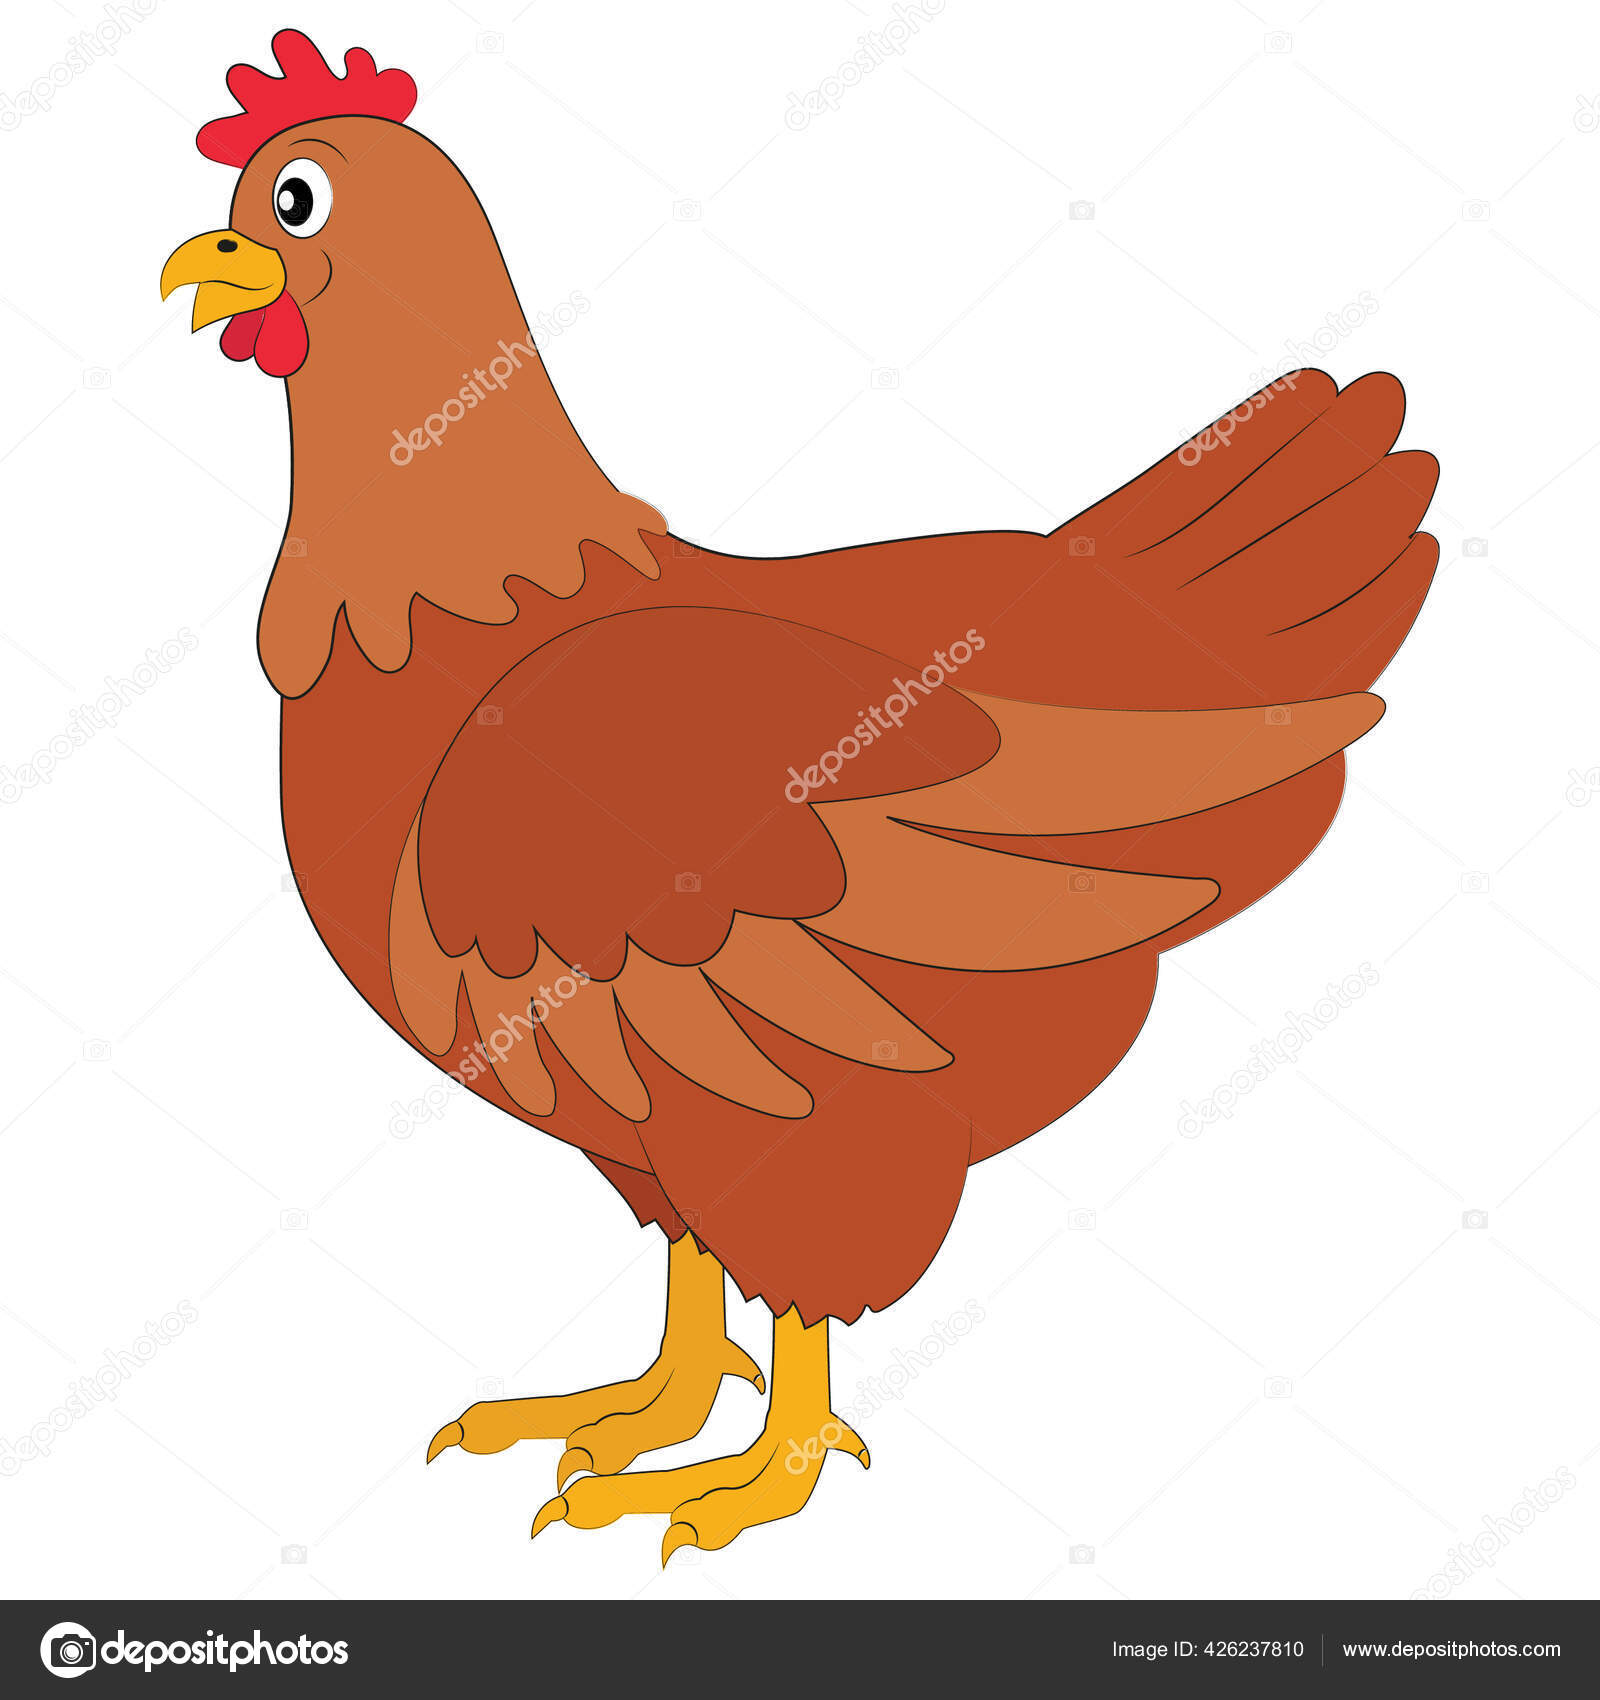 galinha dos desenhos animados incubando seus ovos no ninho de palha.  ilustração de uma galinha sentada em um ninho…